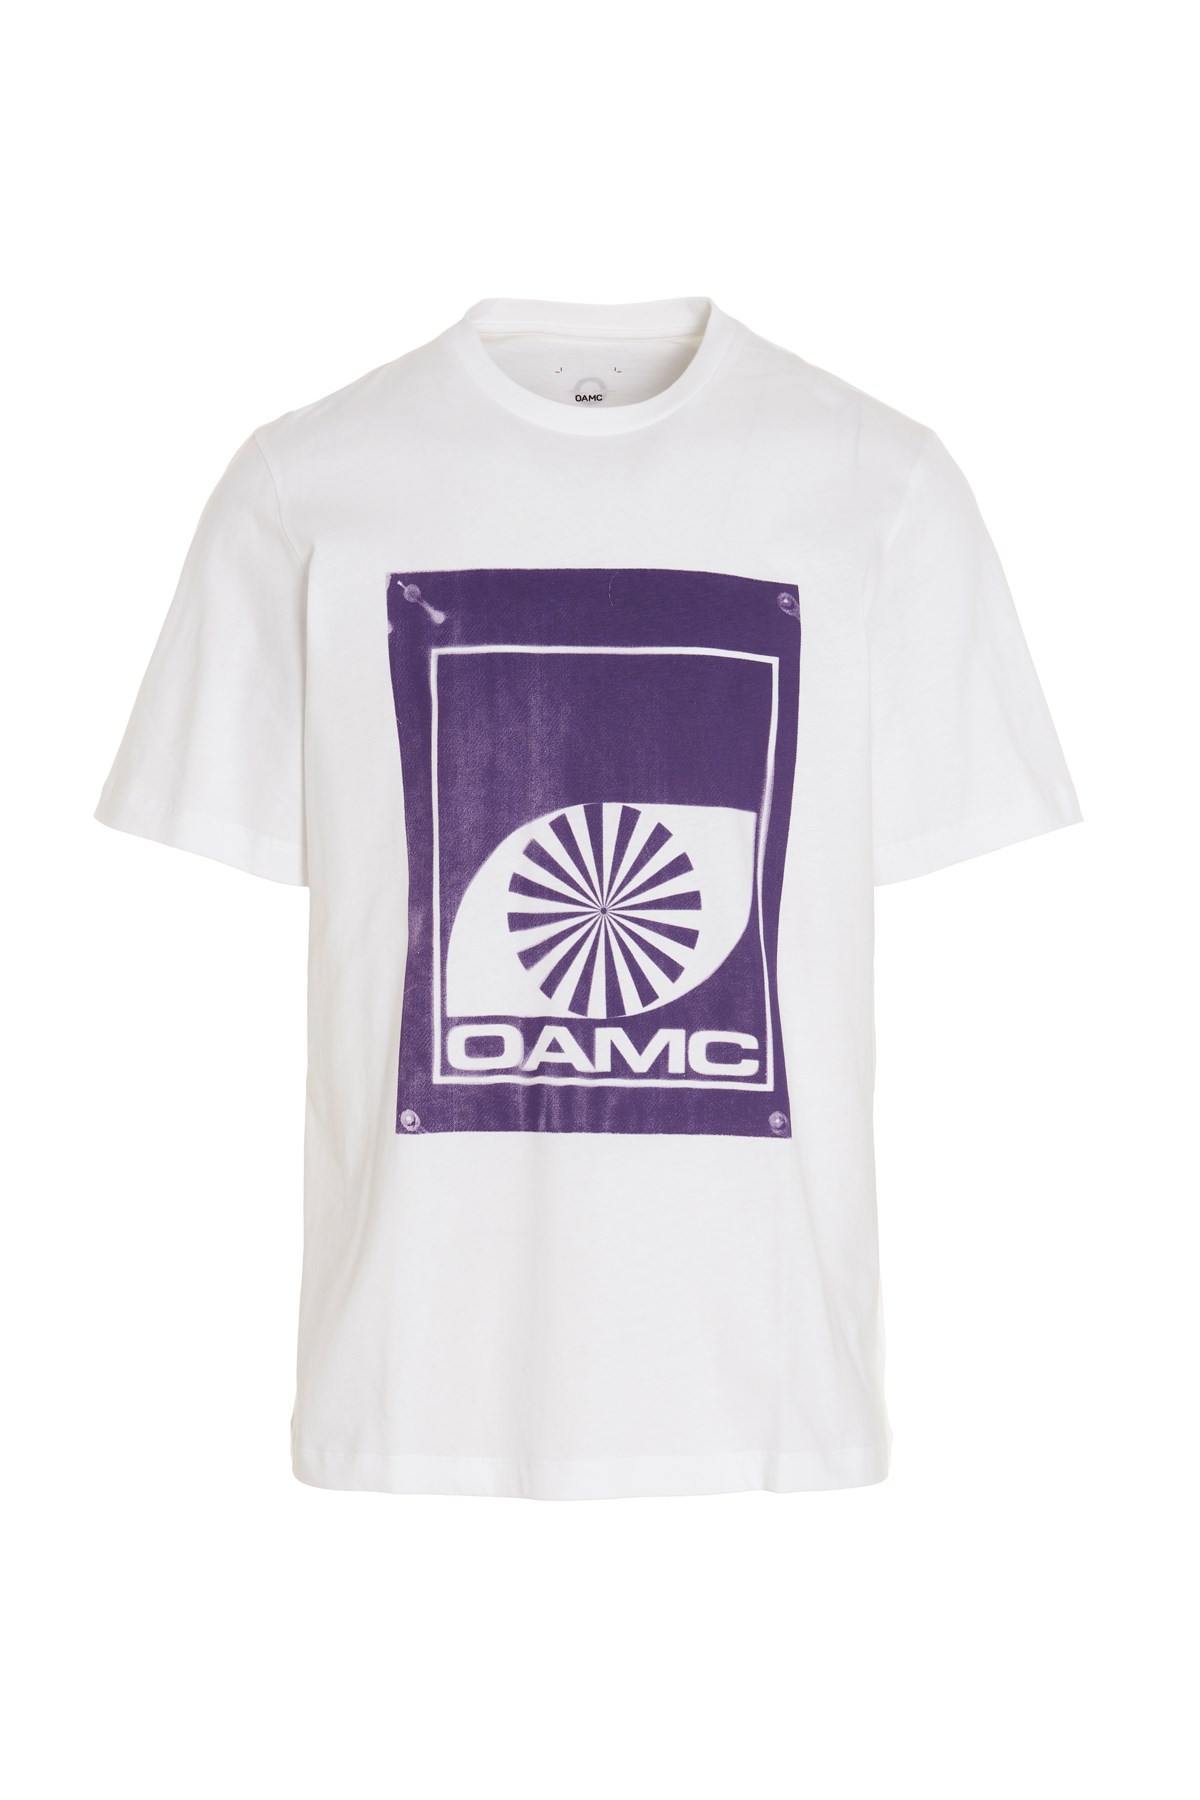 OAMC 'Borealis' T-Shirt